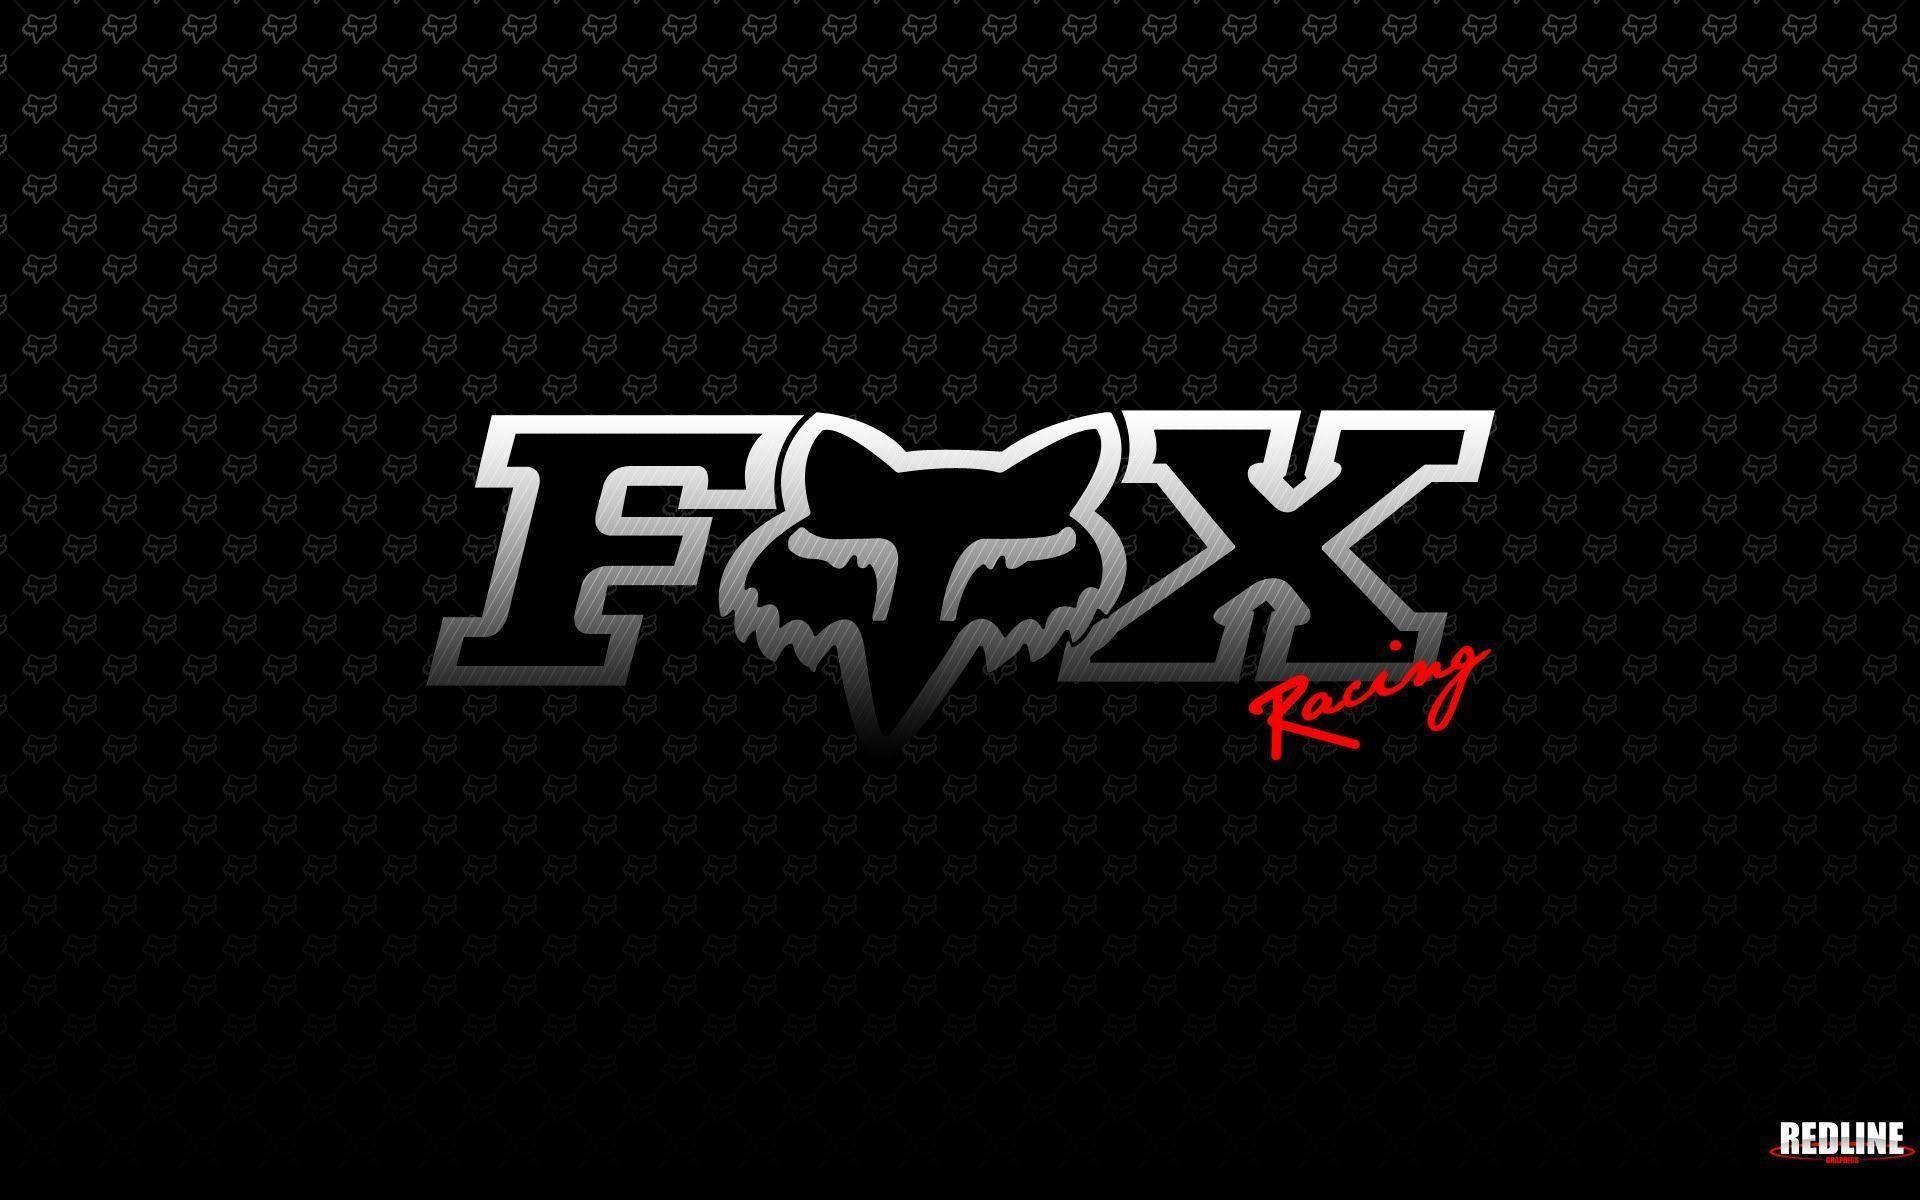 Fox Logo Wallpaper